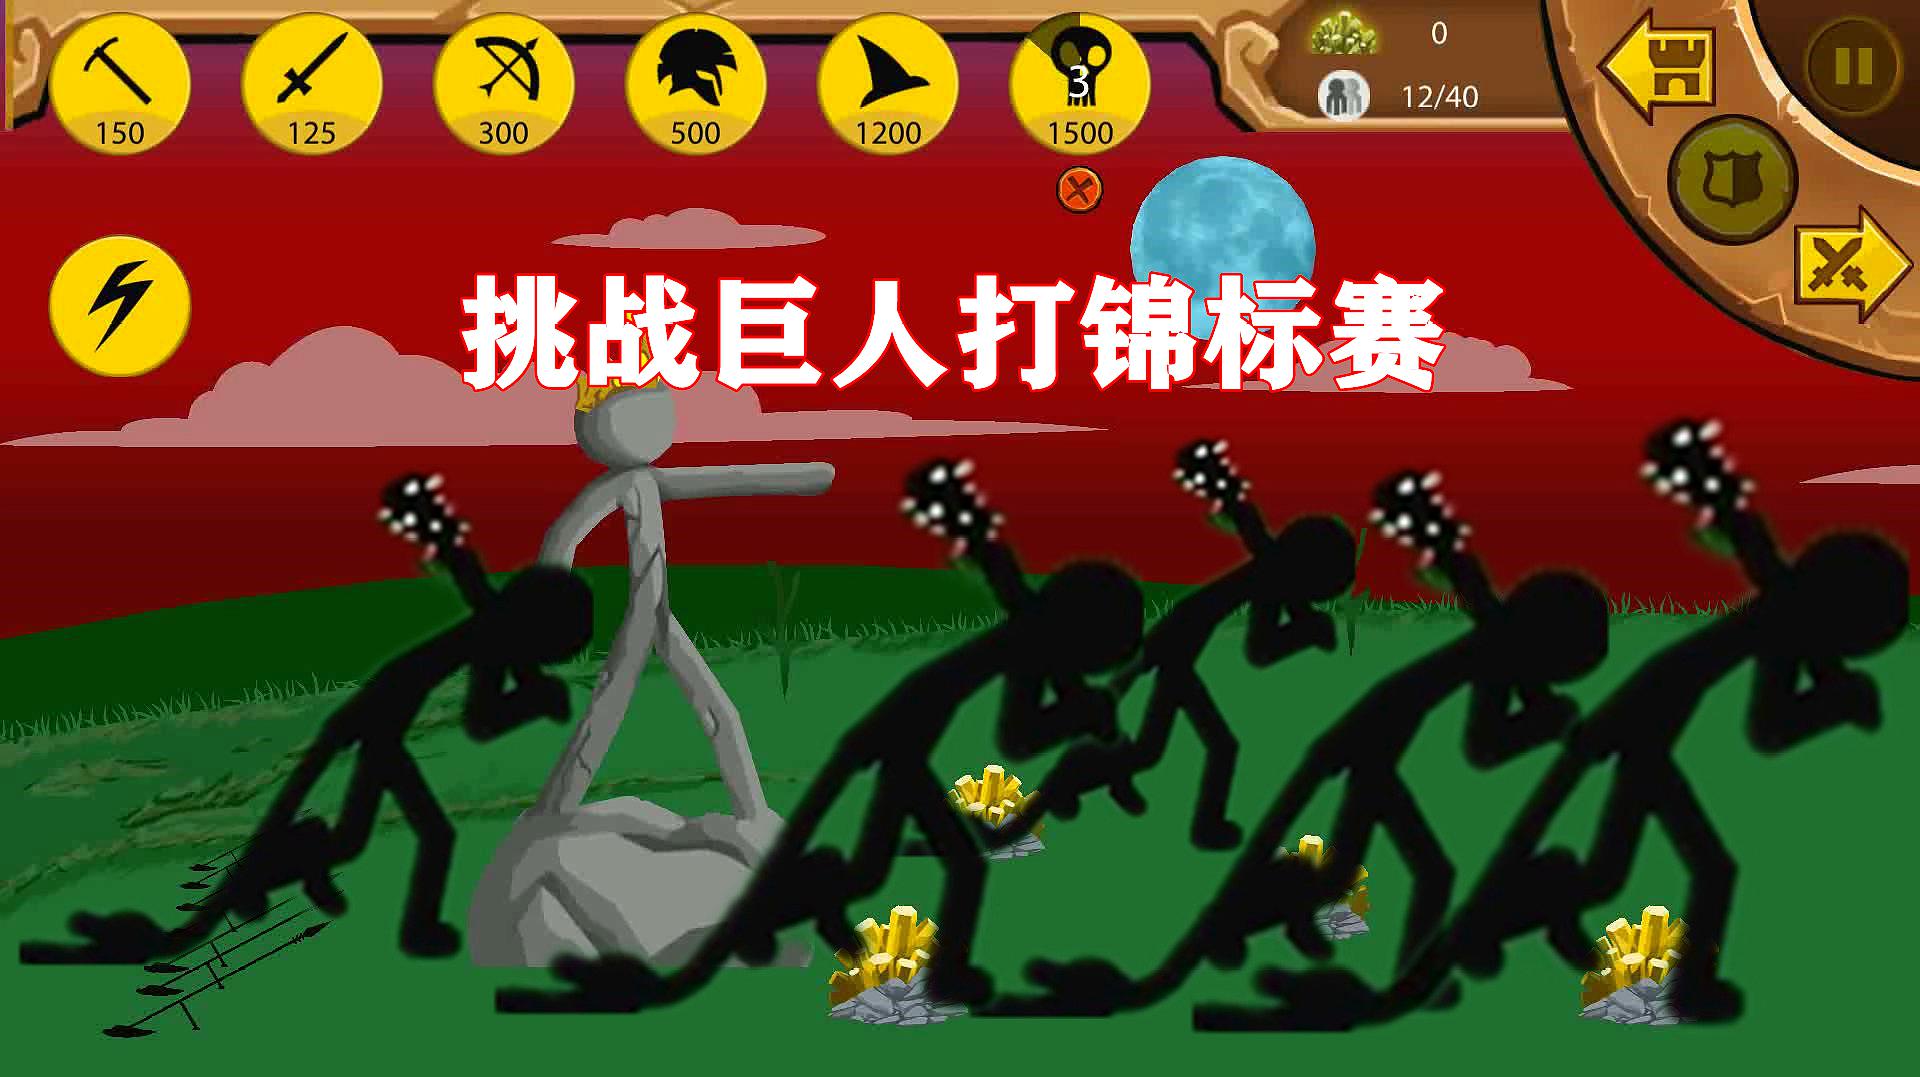 麻花游戏解说:休闲类游戏《火柴人战争遗产》的视频集锦(三)